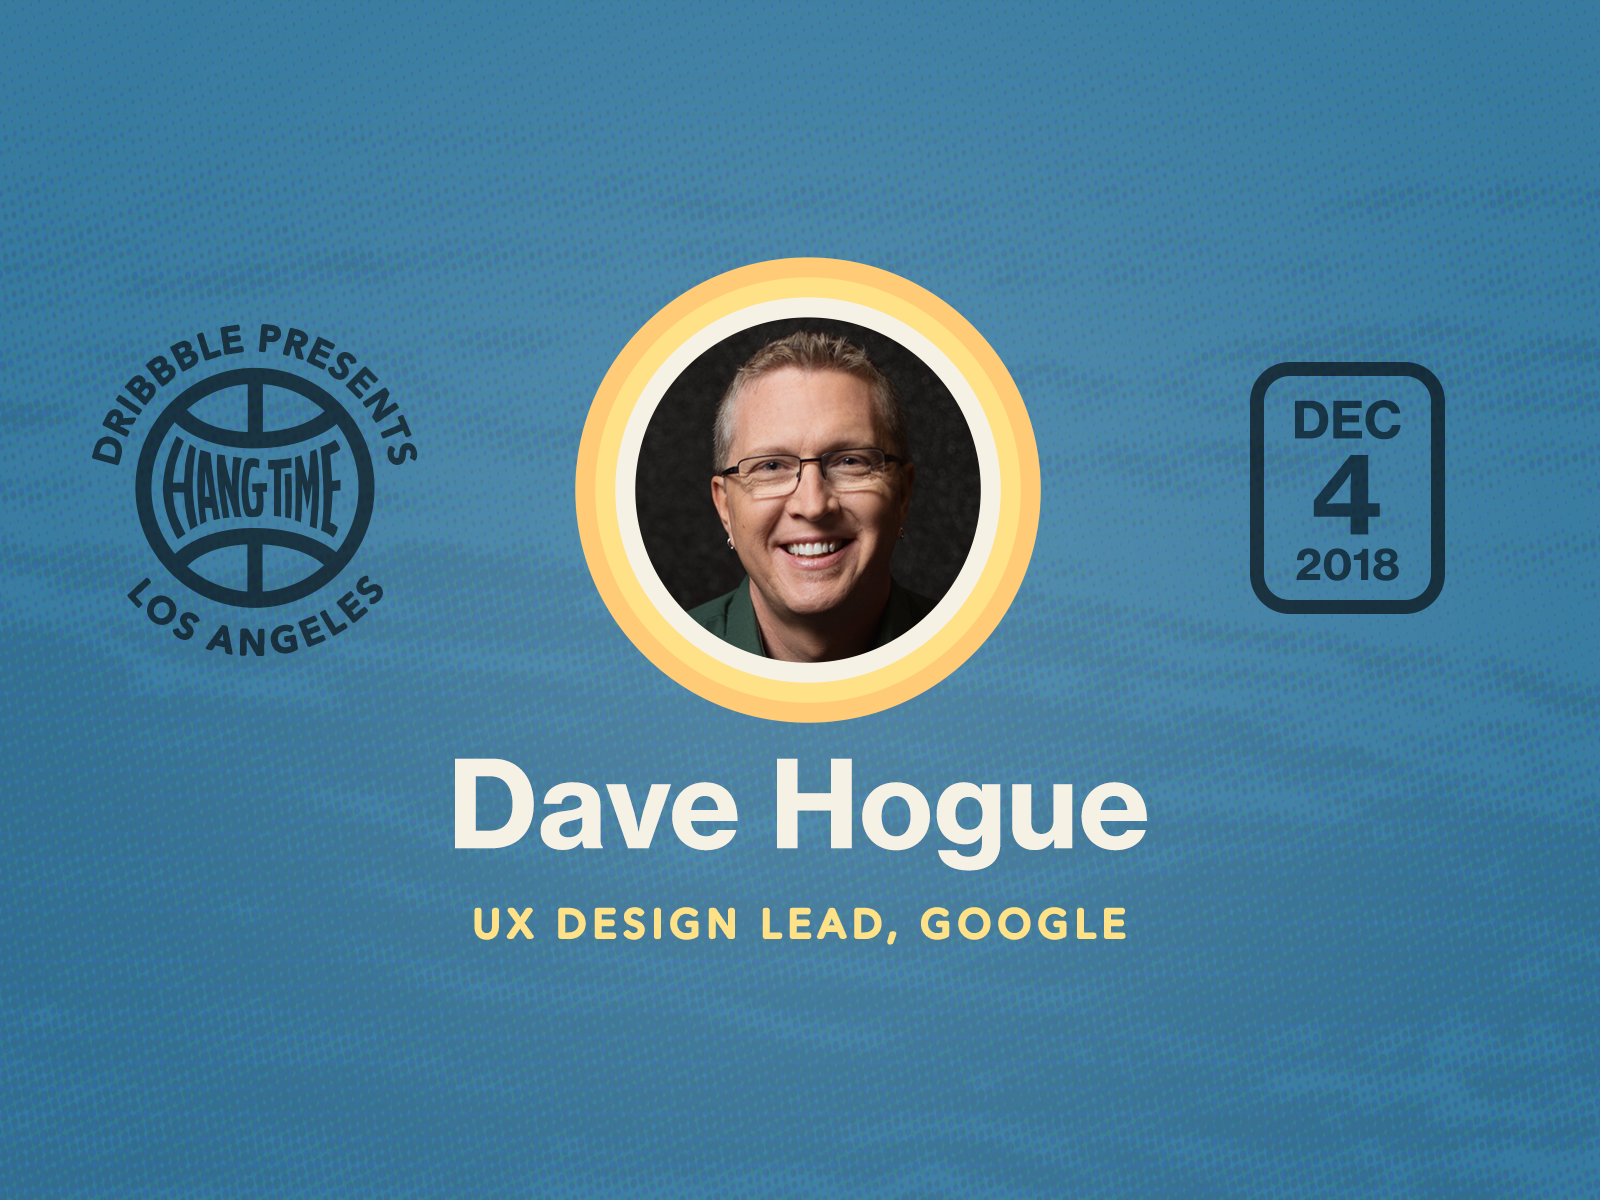 Hang Time LA Speaker Spotlight on Dave Hogue